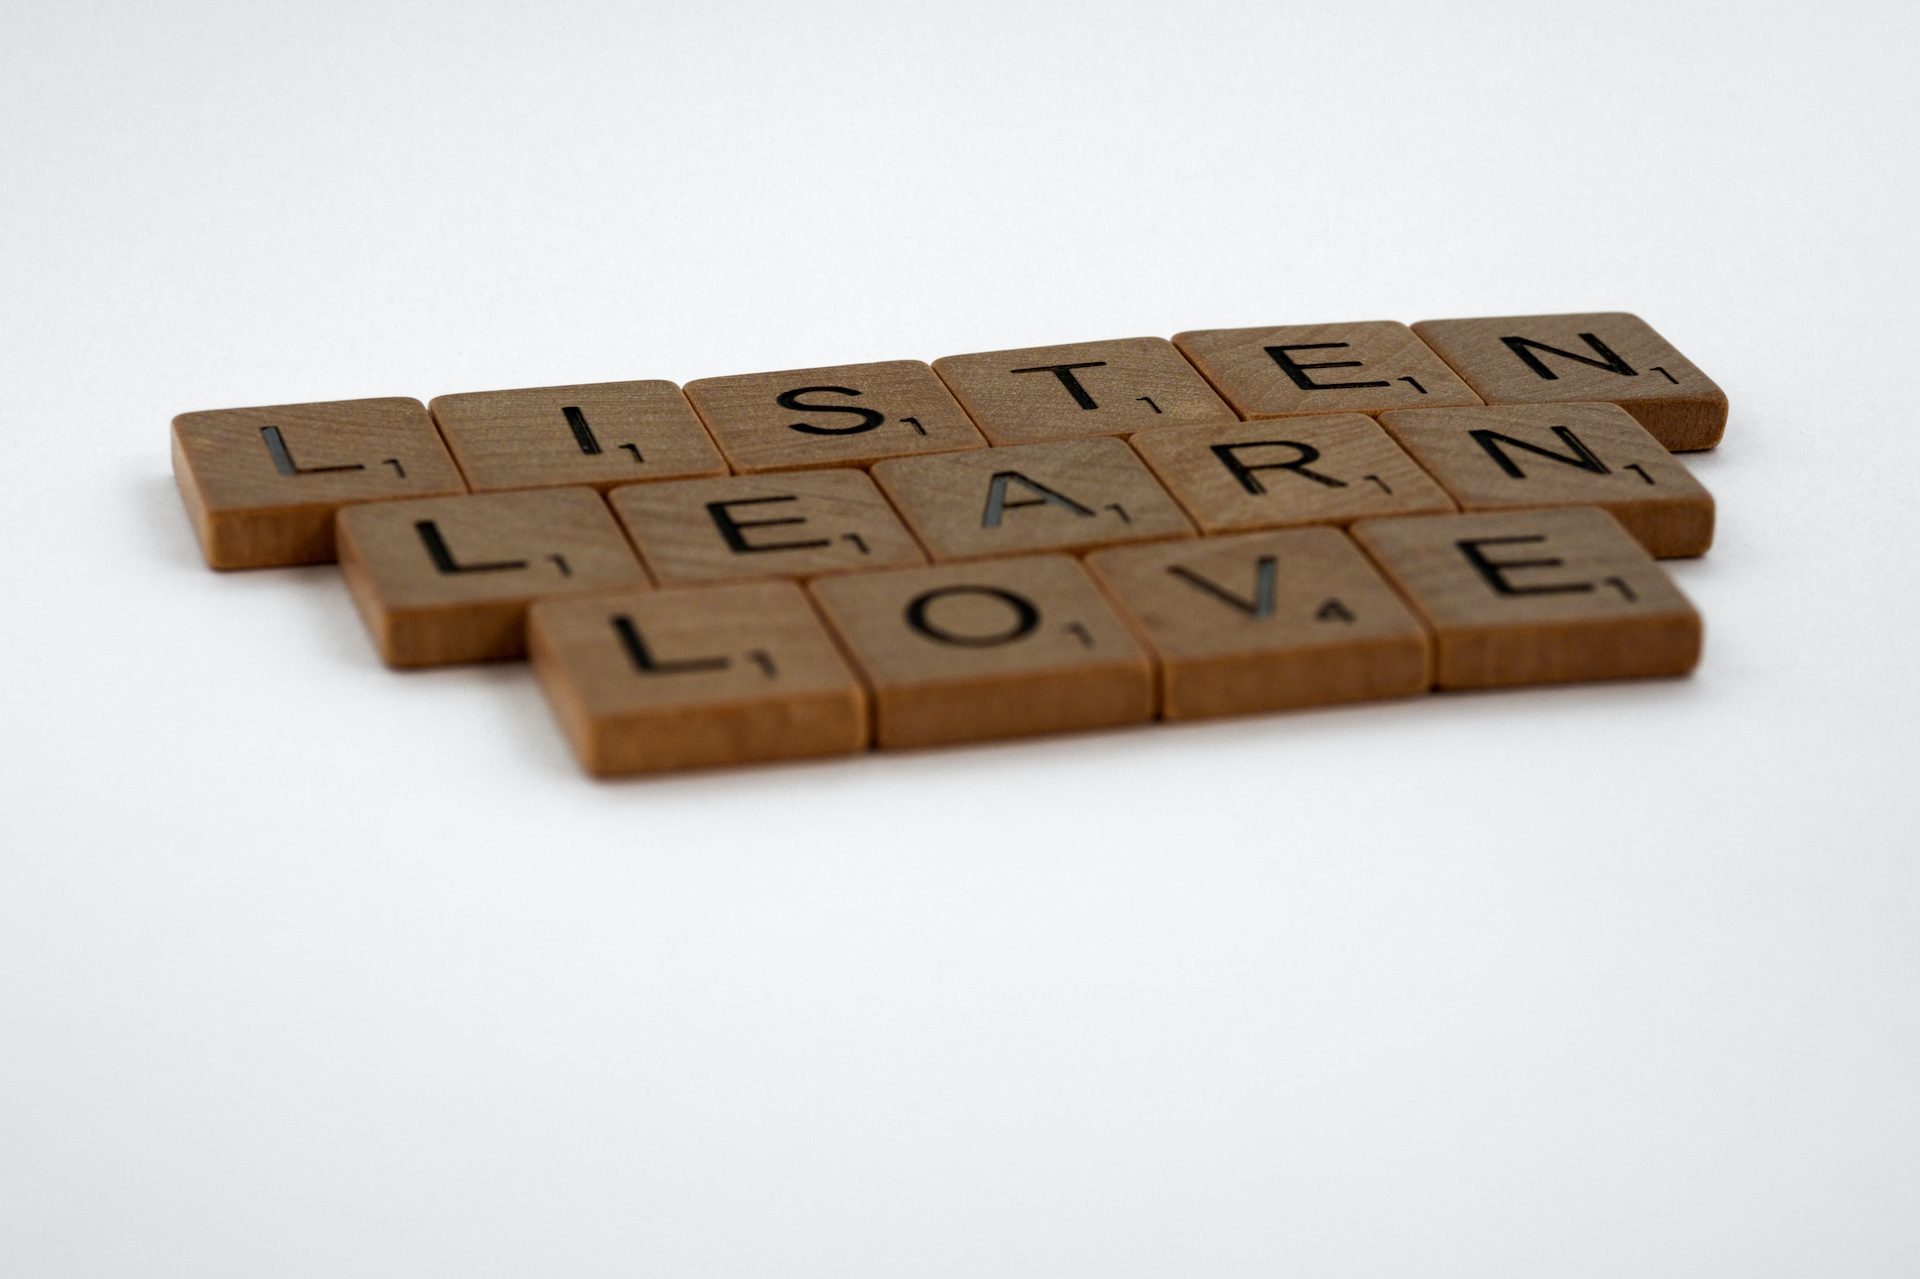 Scrabble-Steine die die Worte Listen, learn, love buchstabieren